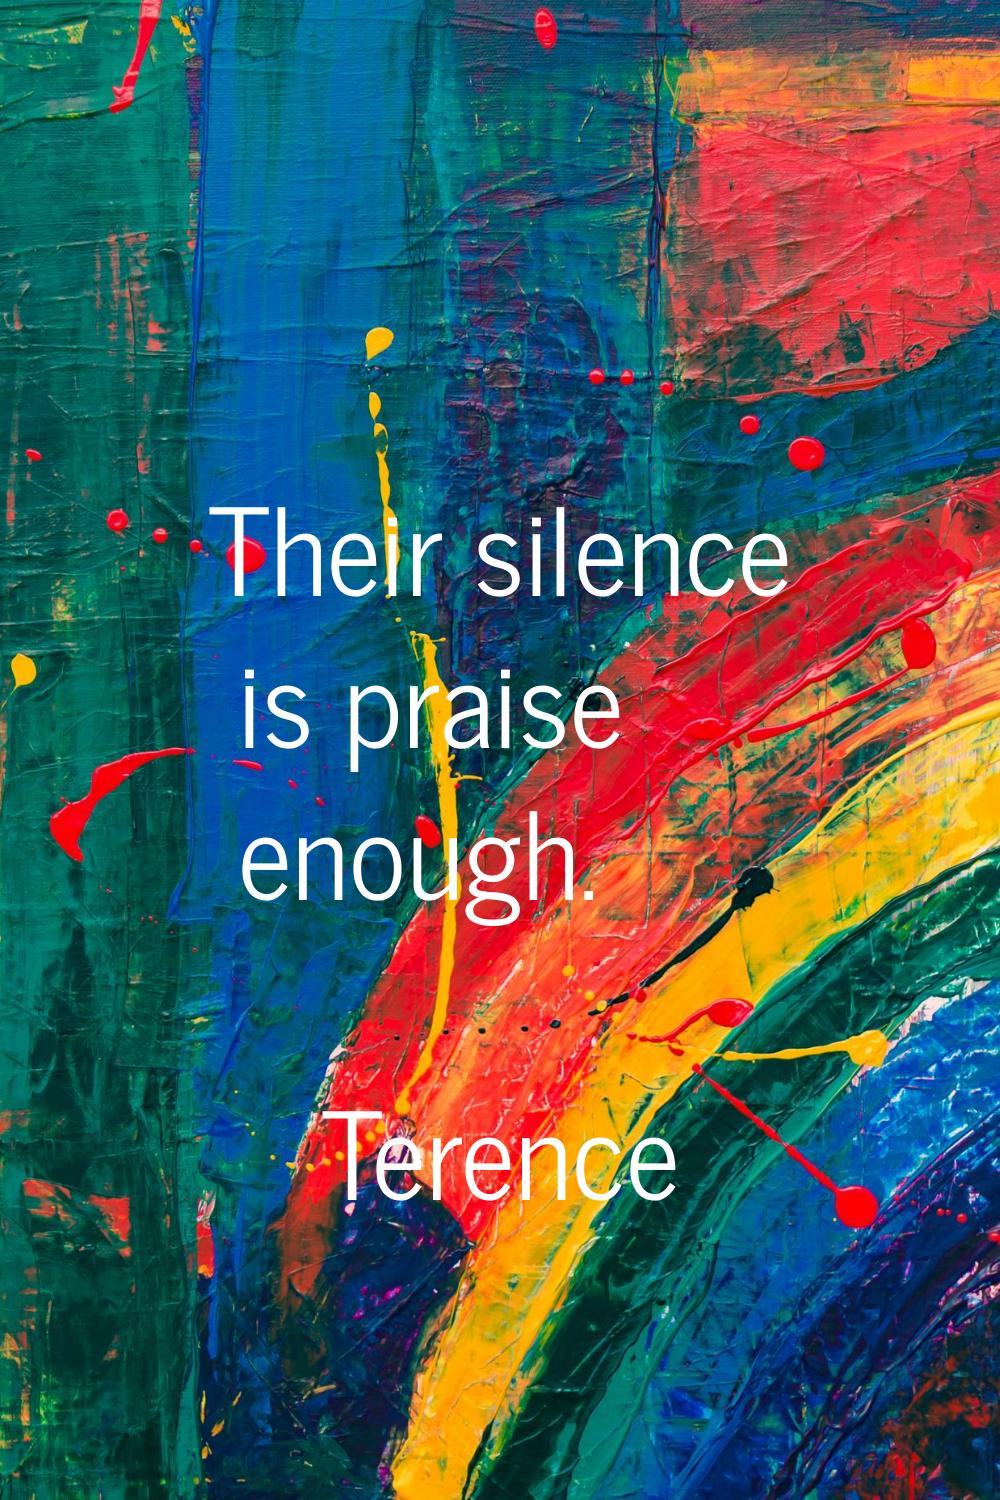 Their silence is praise enough.